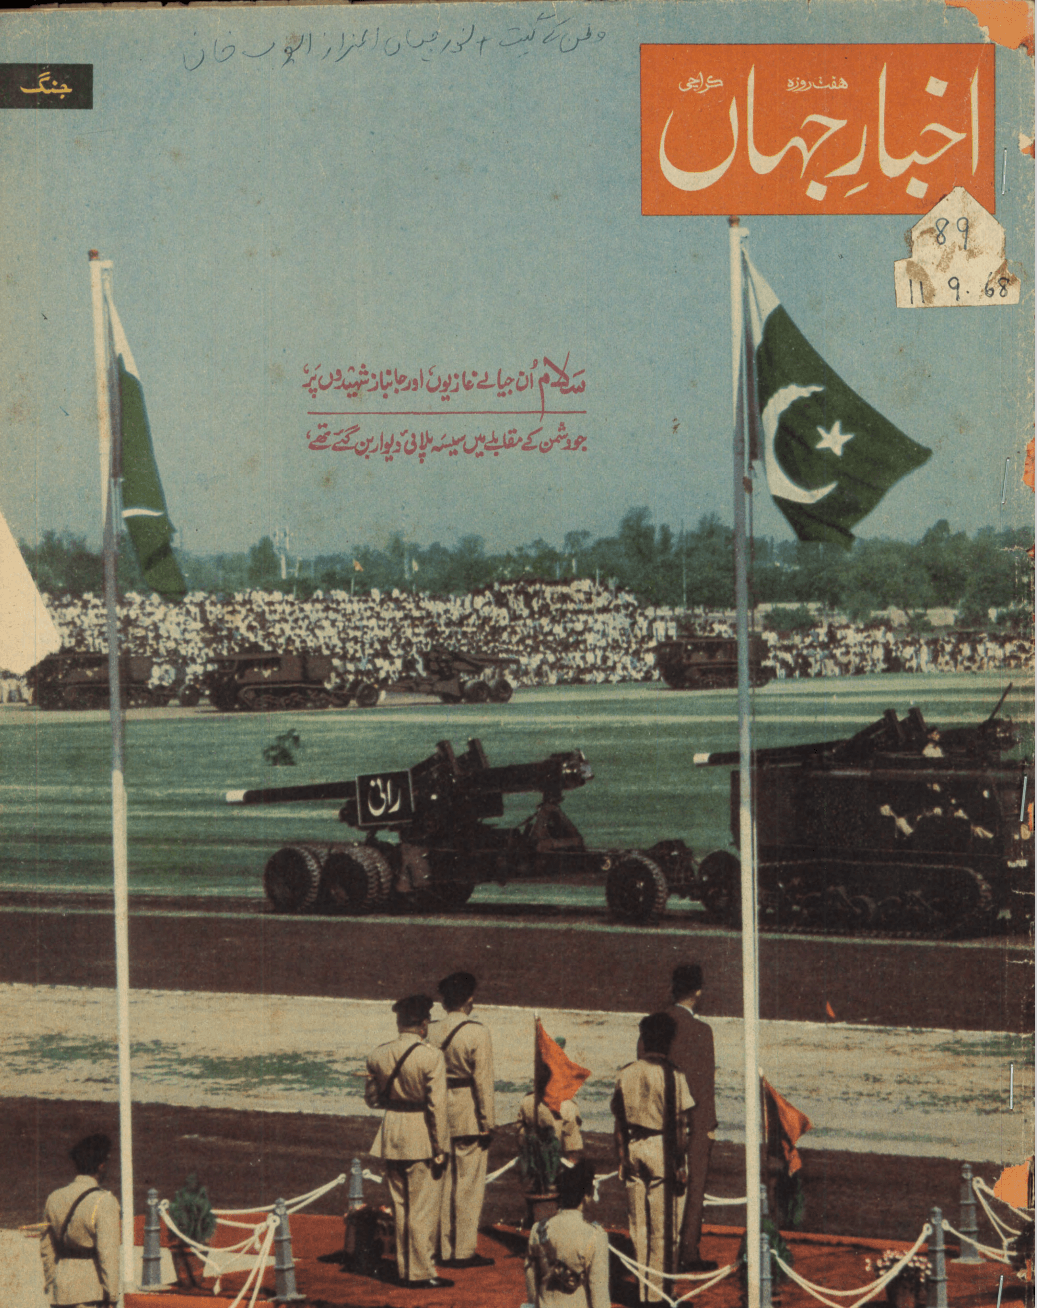 Akhbar e Jahan (Sep 11, 1968) - KHAJISTAN™